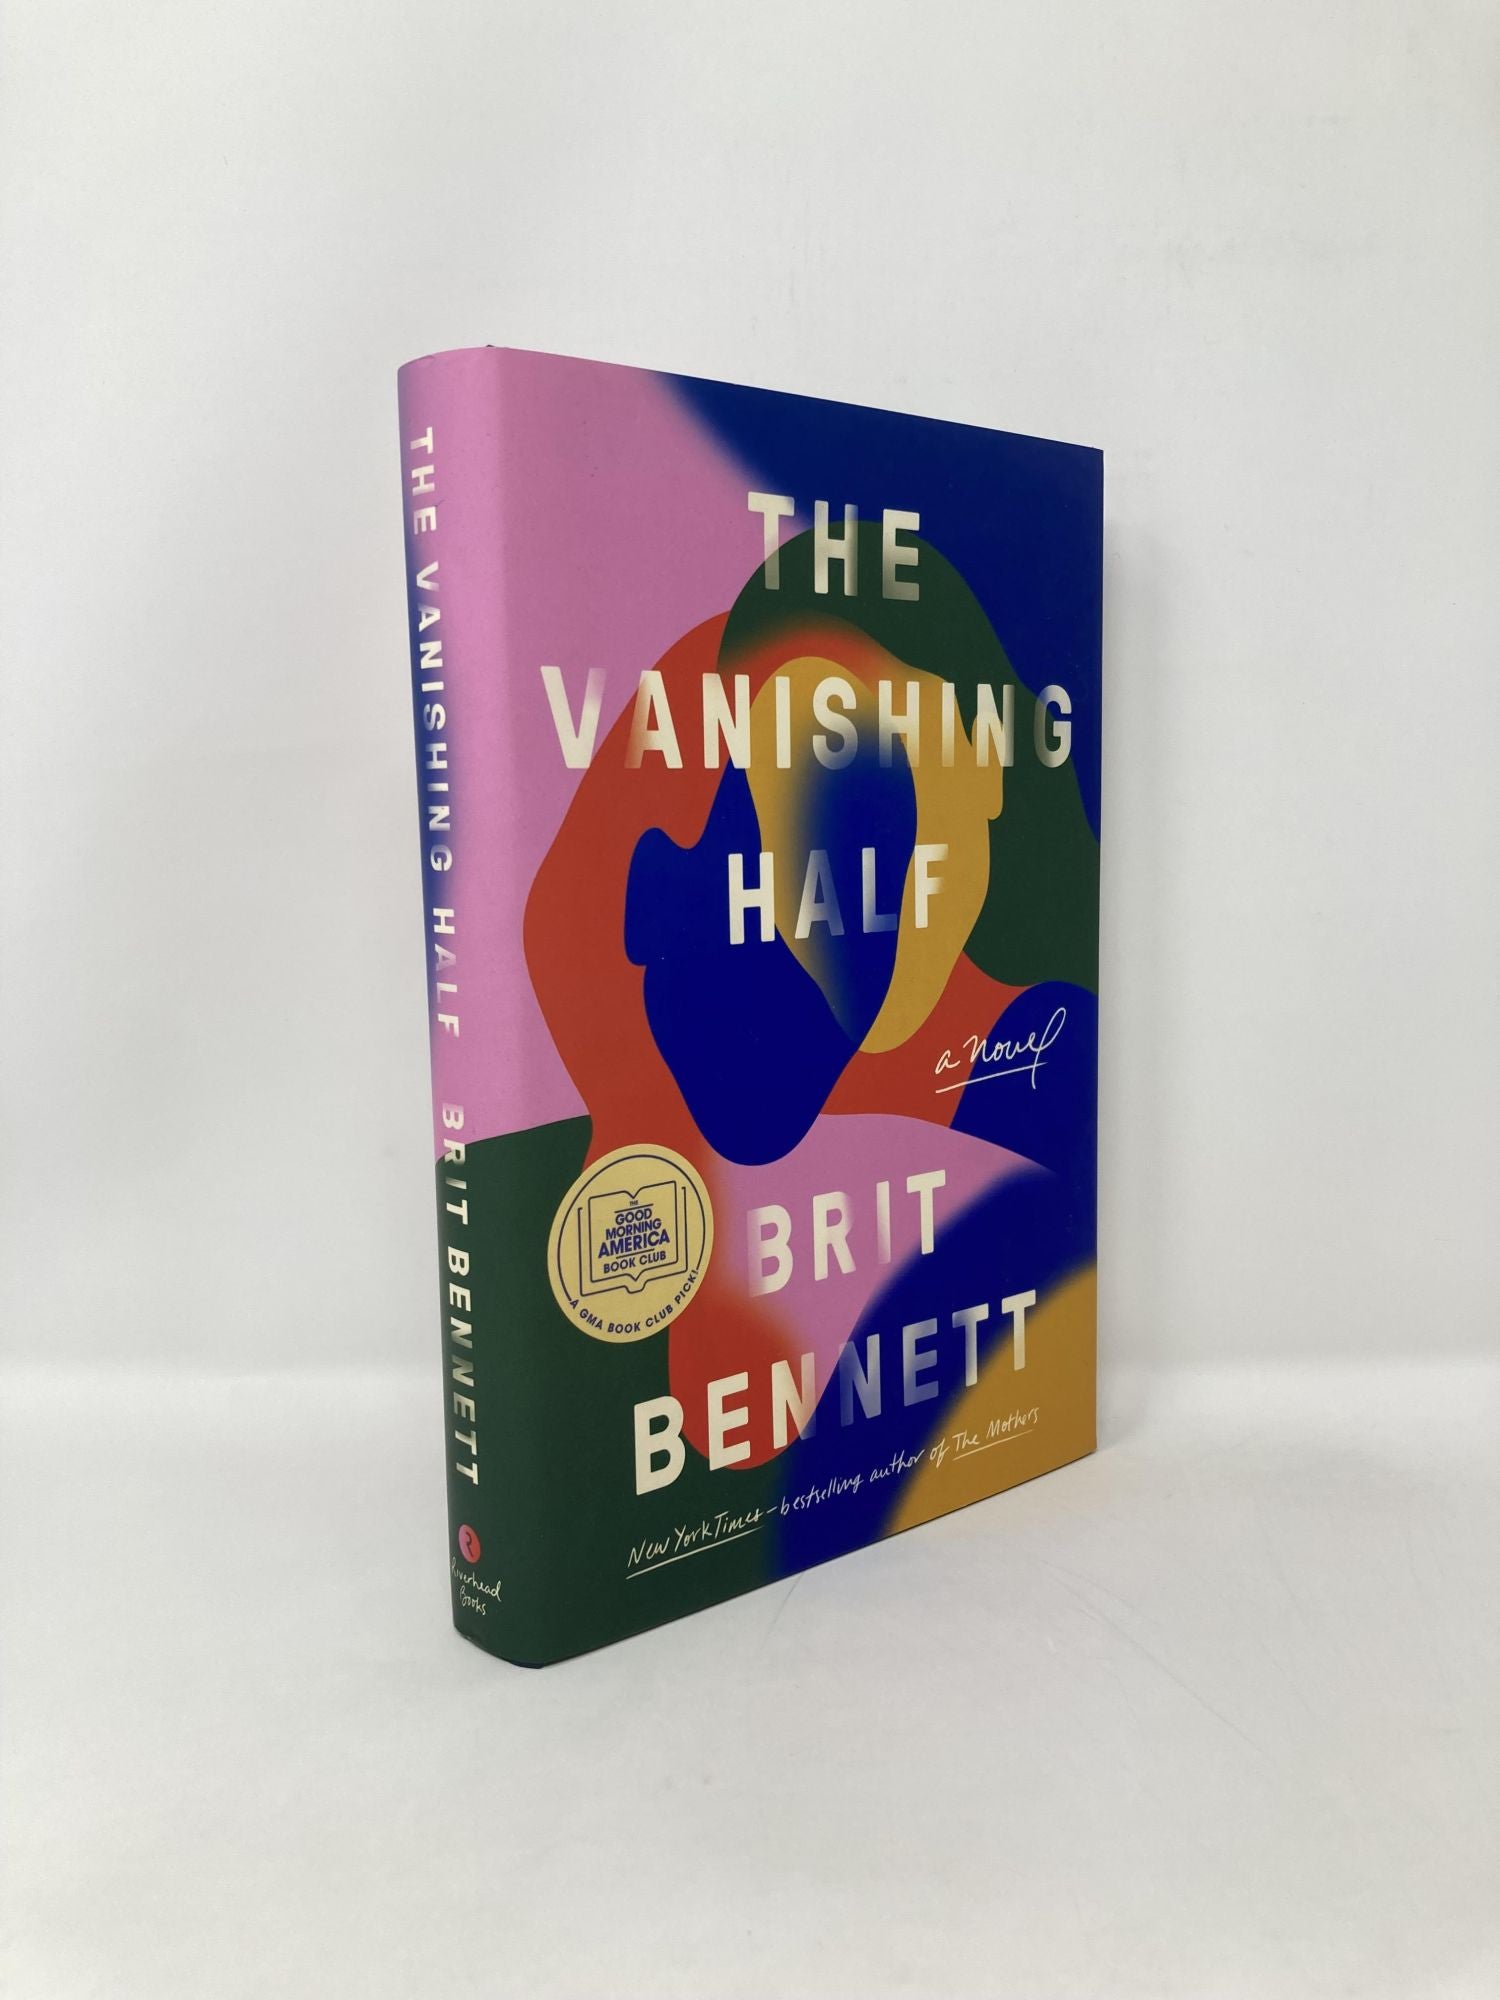 The Vanishing Half: A Novel by Brit Bennett on Sag Harbor Books